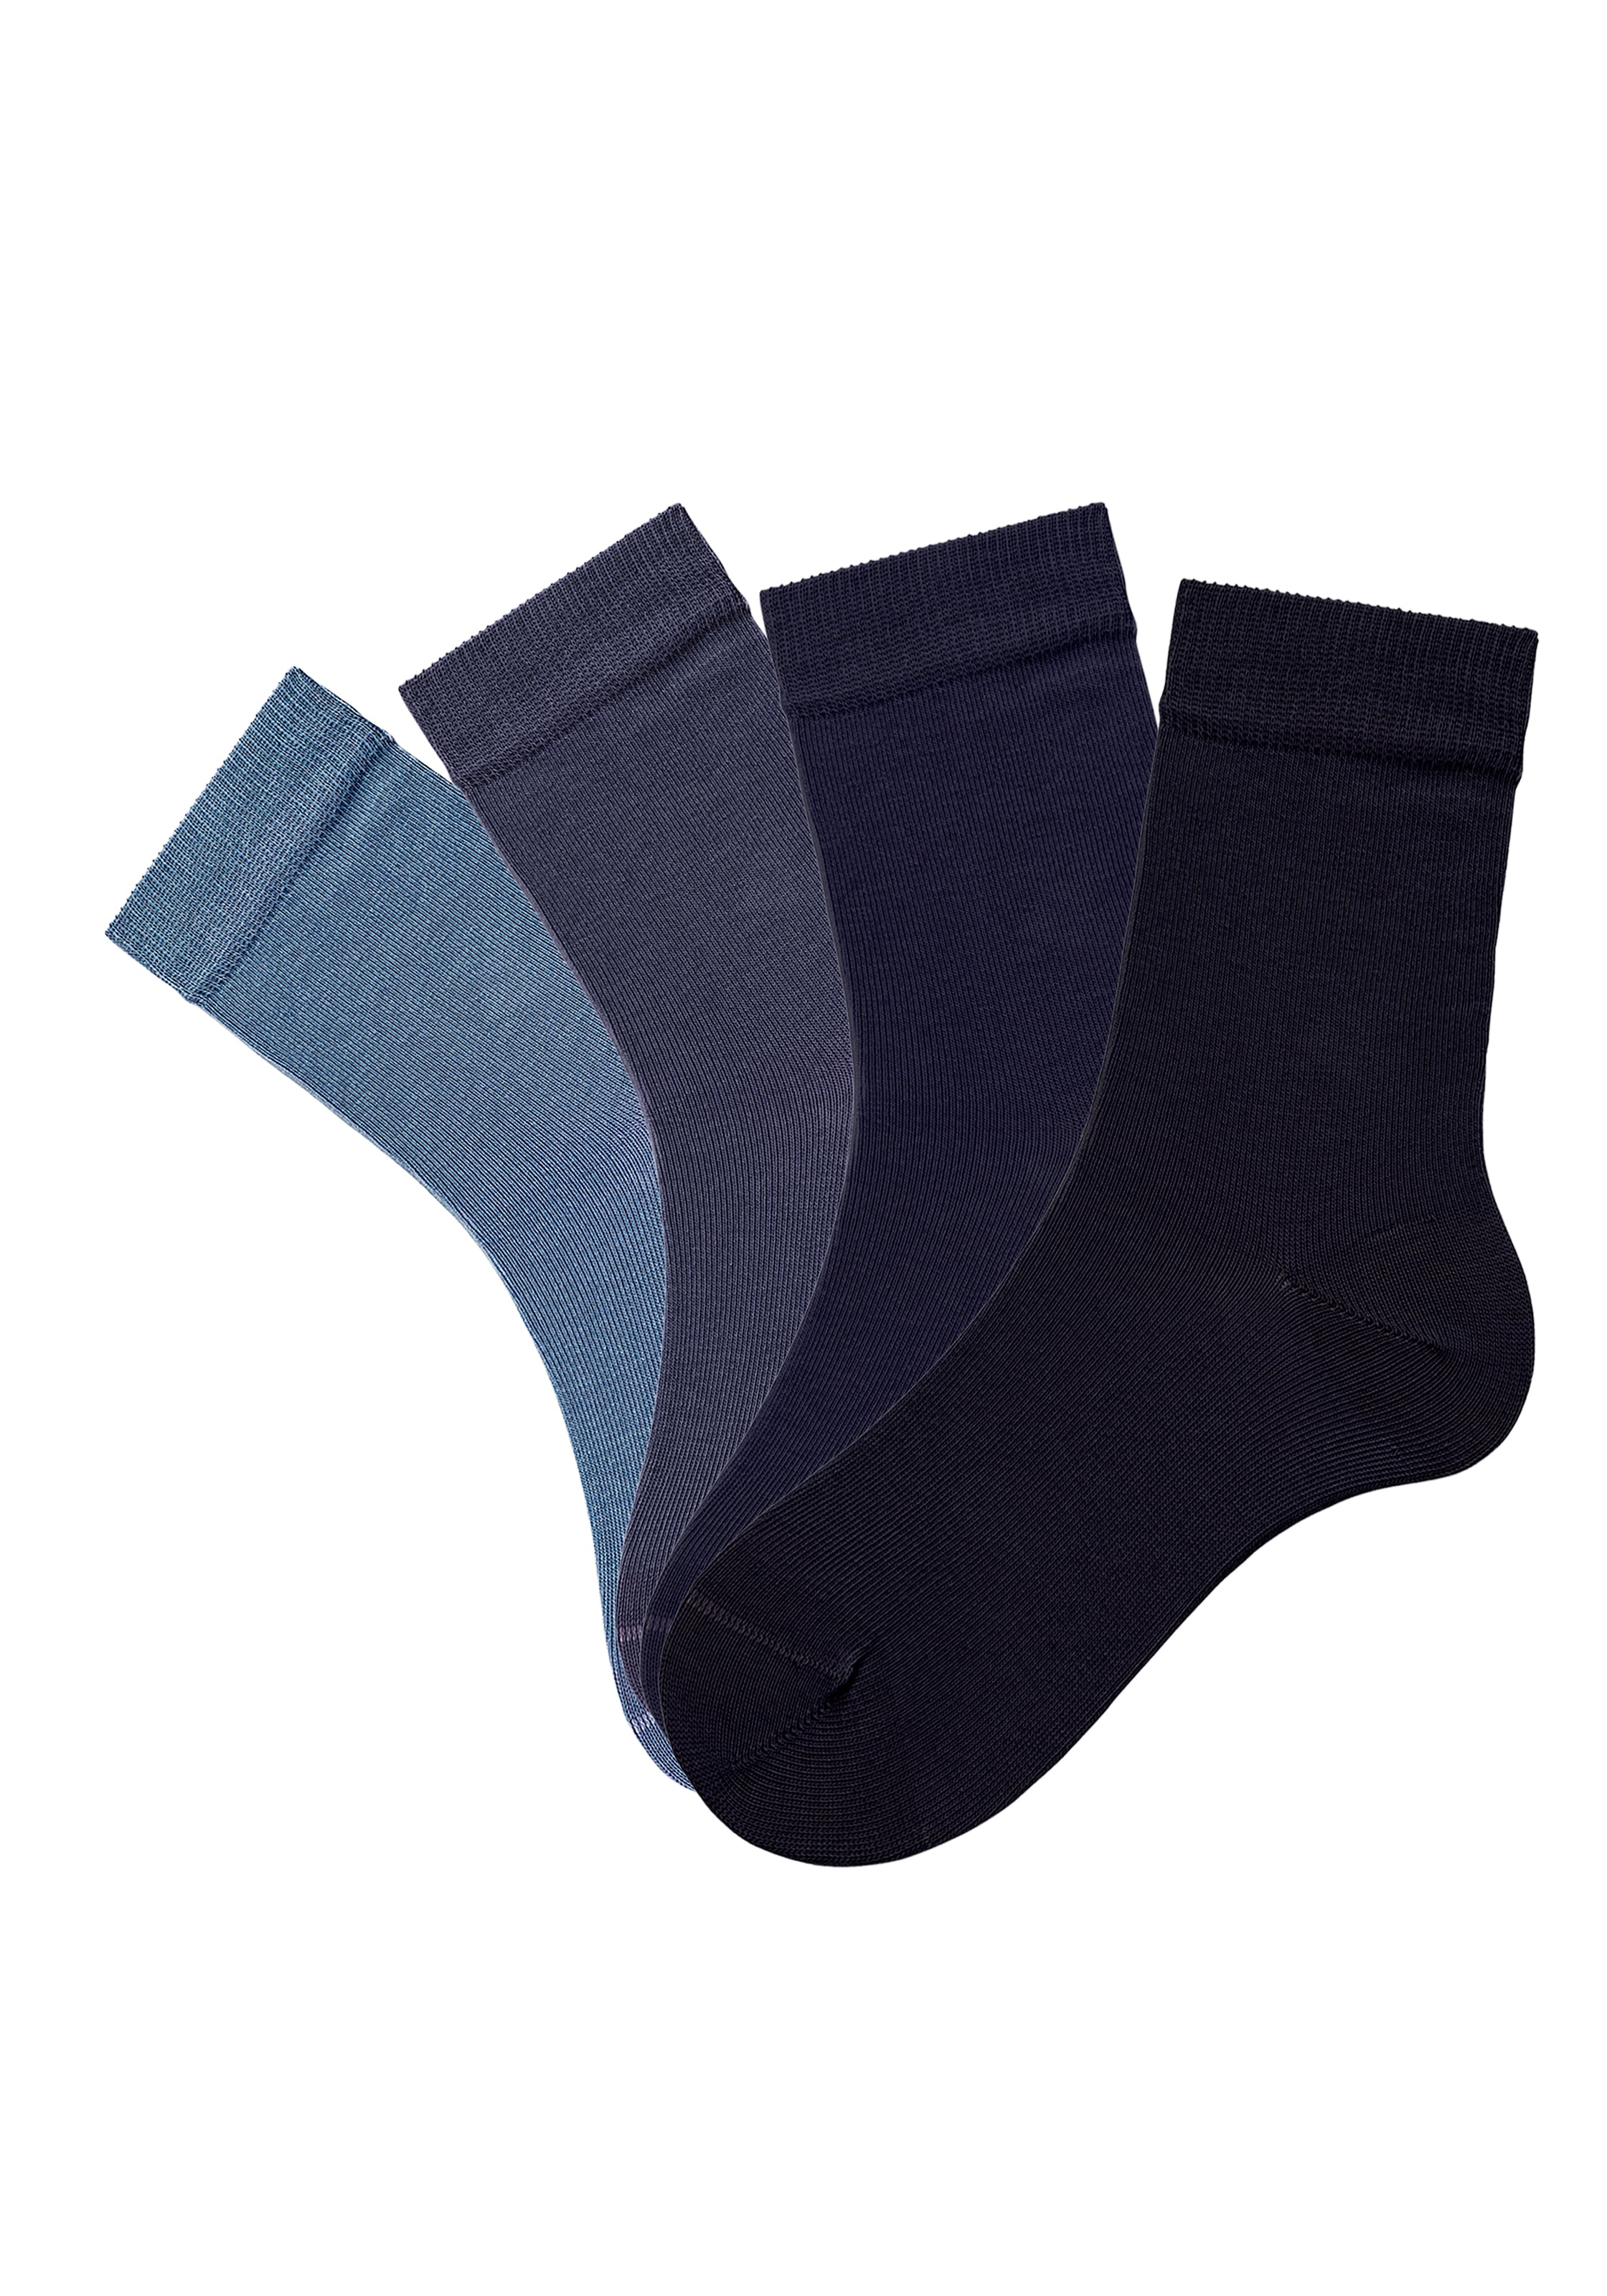 H.I.S Socken, (4 Paar), ♕ in unterschiedlichen Farbzusammenstellungen bei